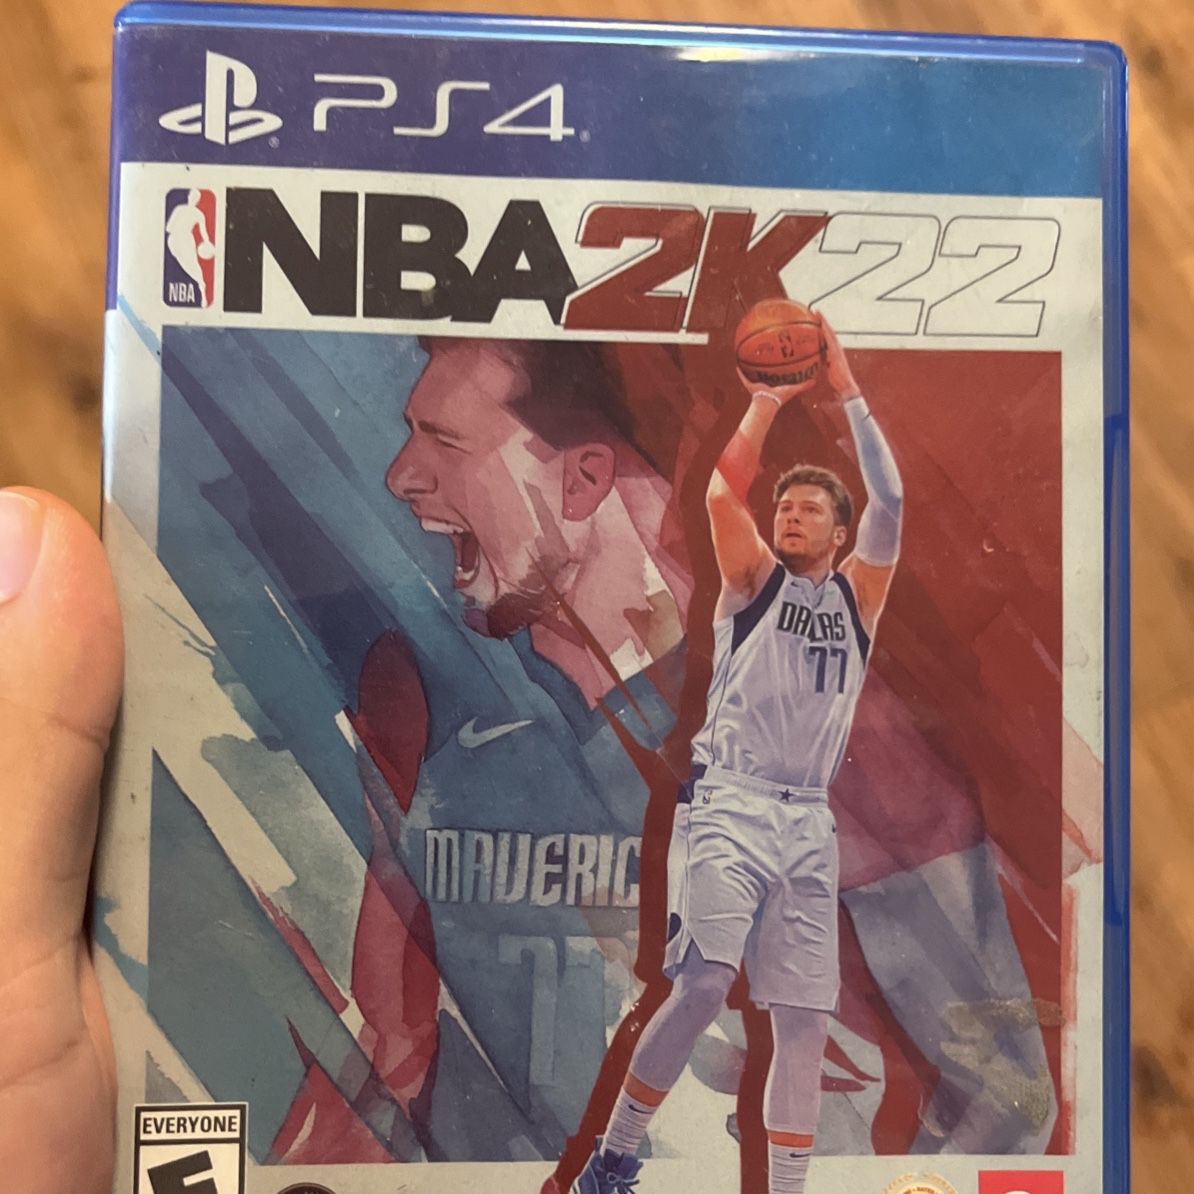 PS4 NBA 2k22 Still Works